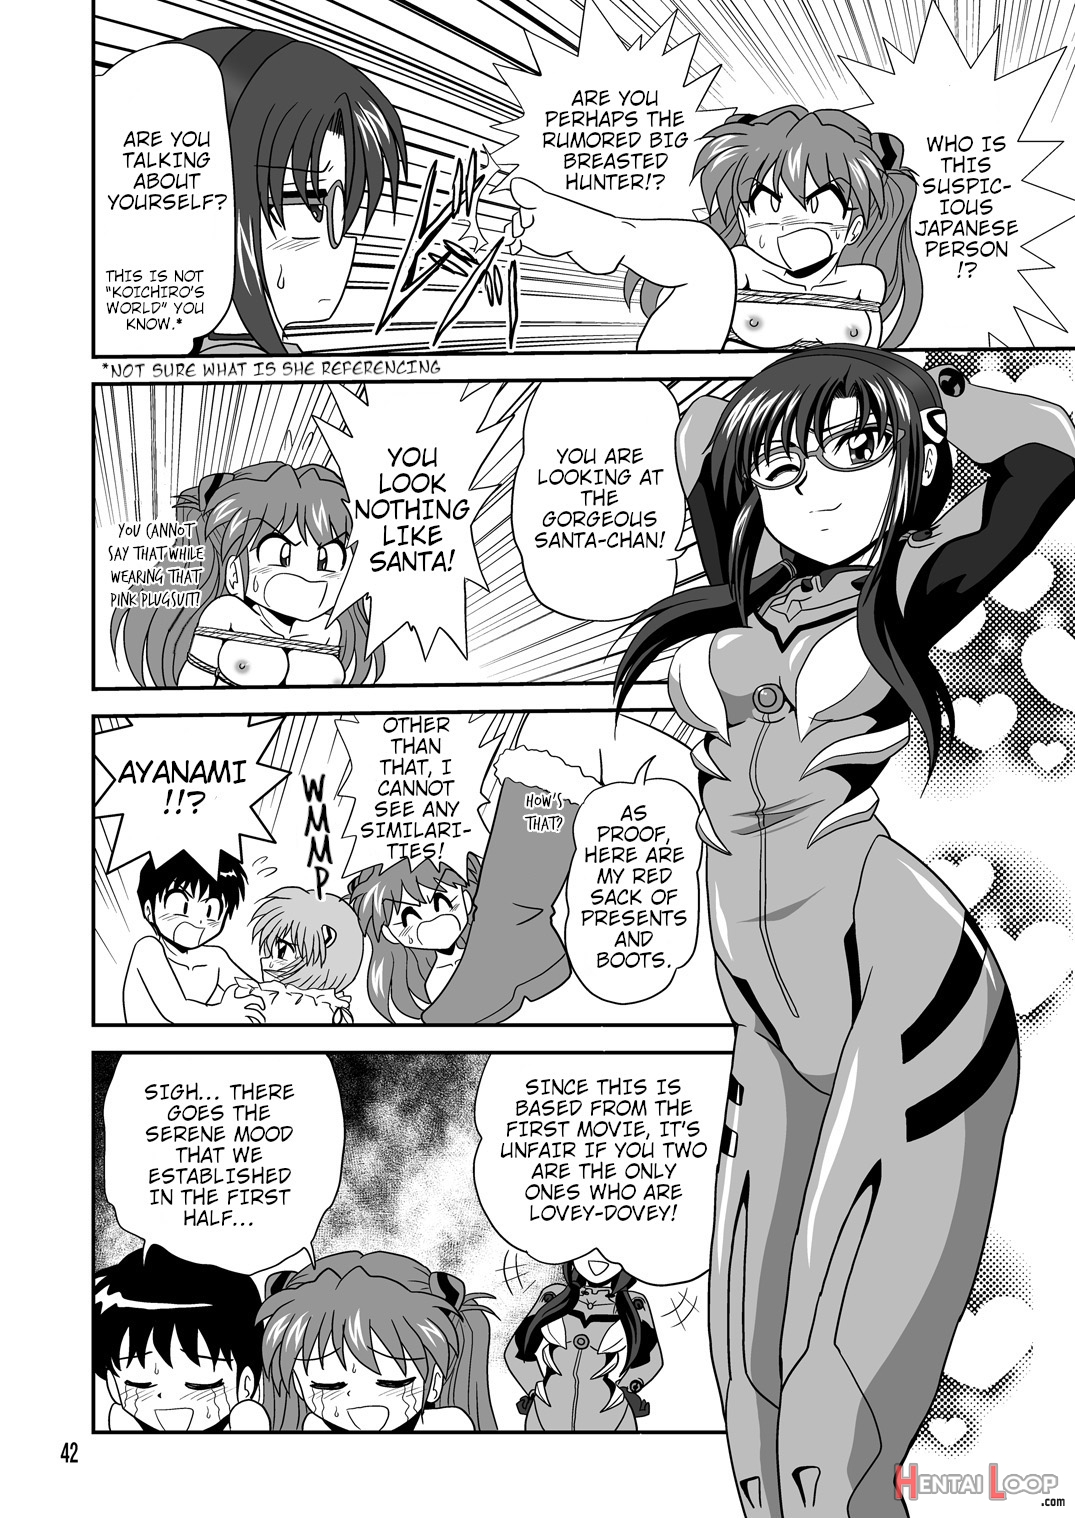 Second Soushingeki page 2